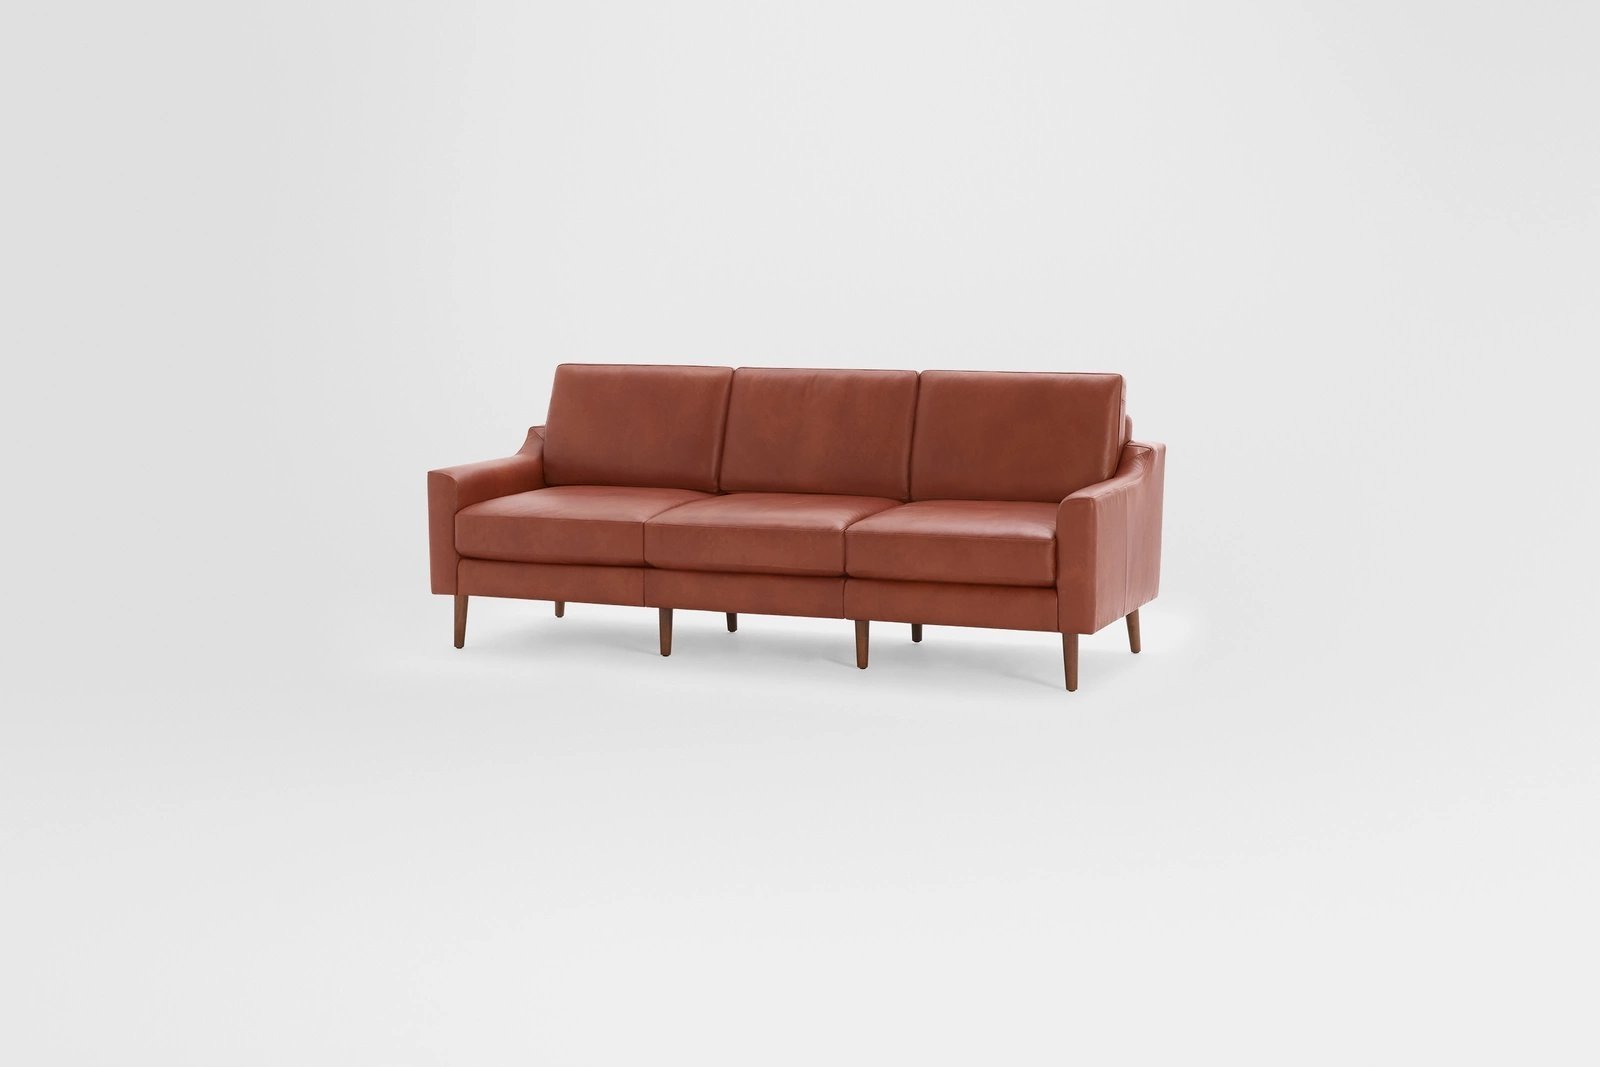 Nomad Leather Sofa - Chestnut - Image 1